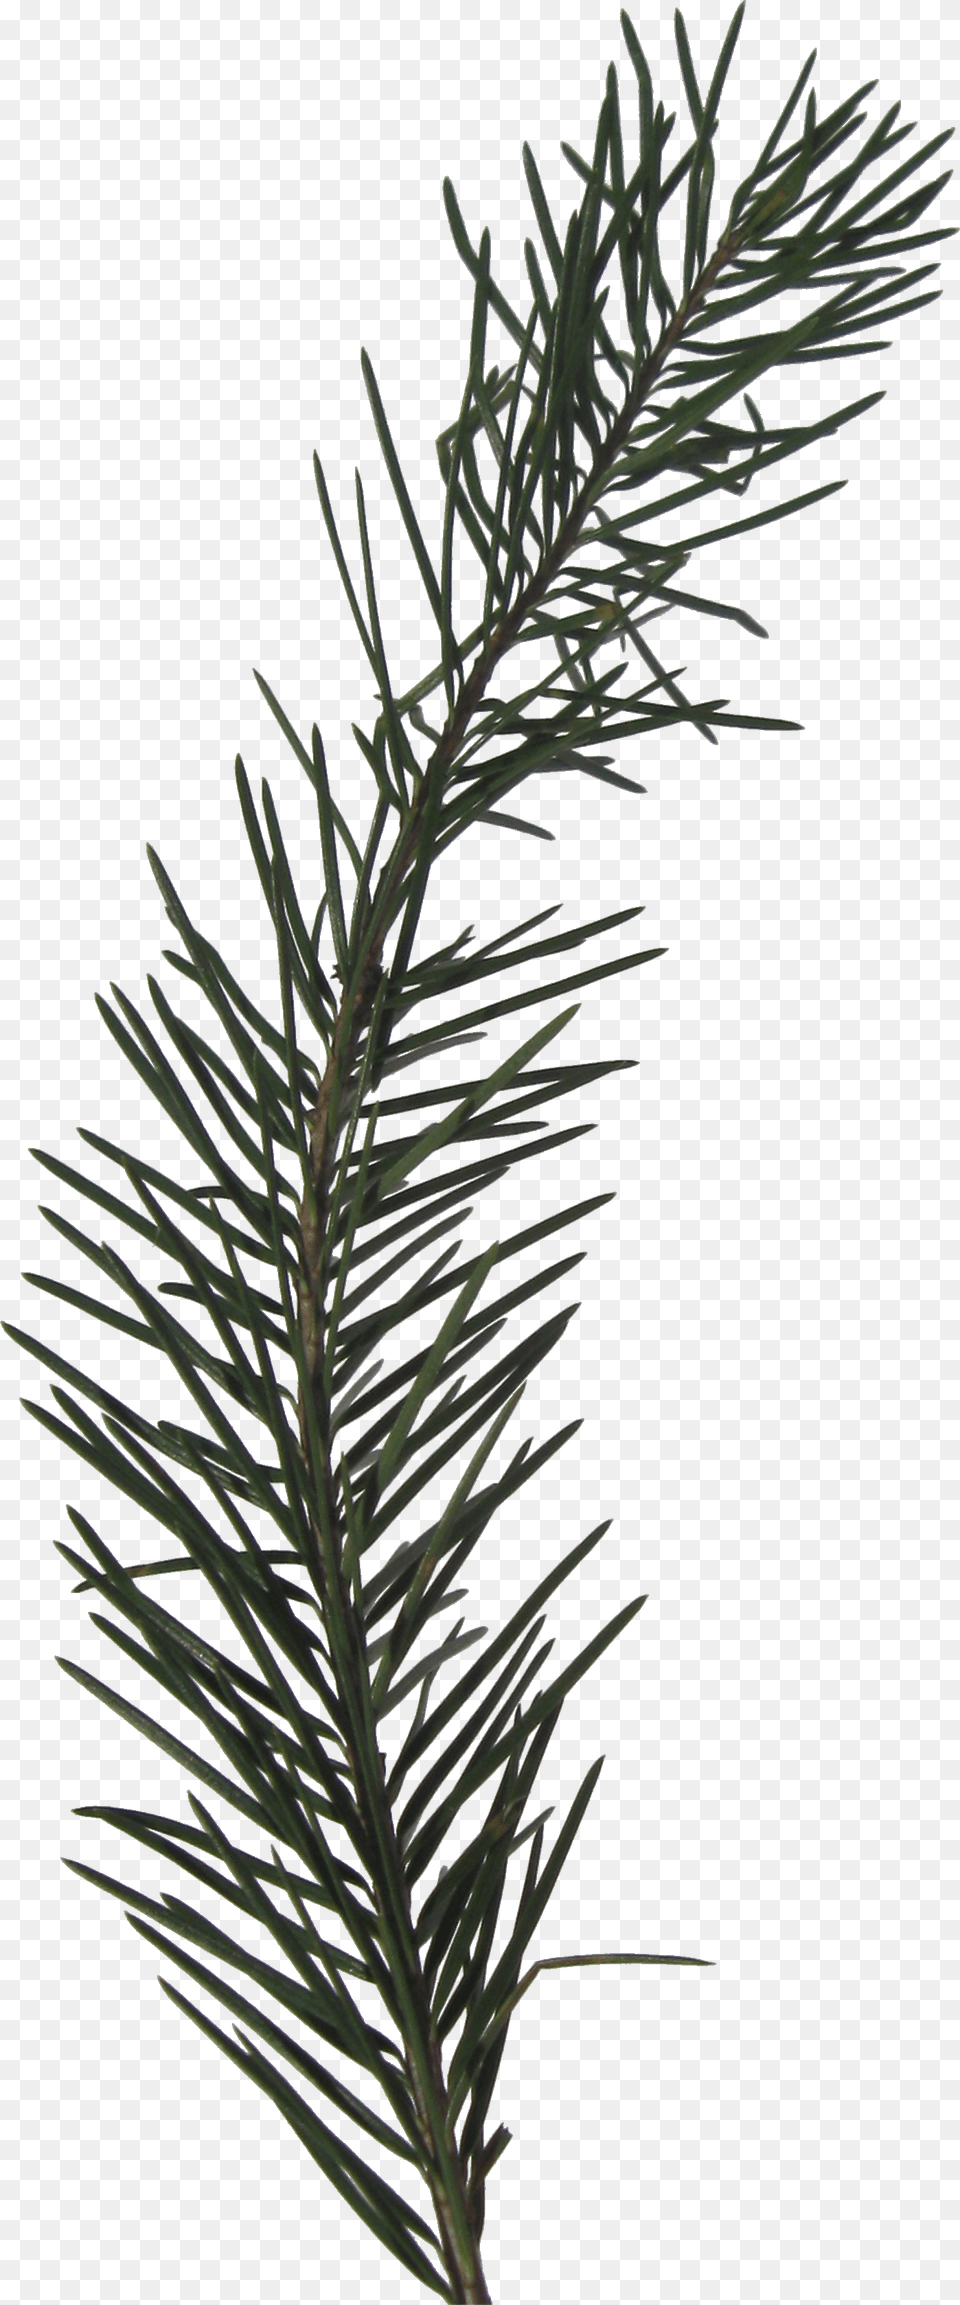 Transparent Pine Sprig, Conifer, Fir, Plant, Tree Png Image